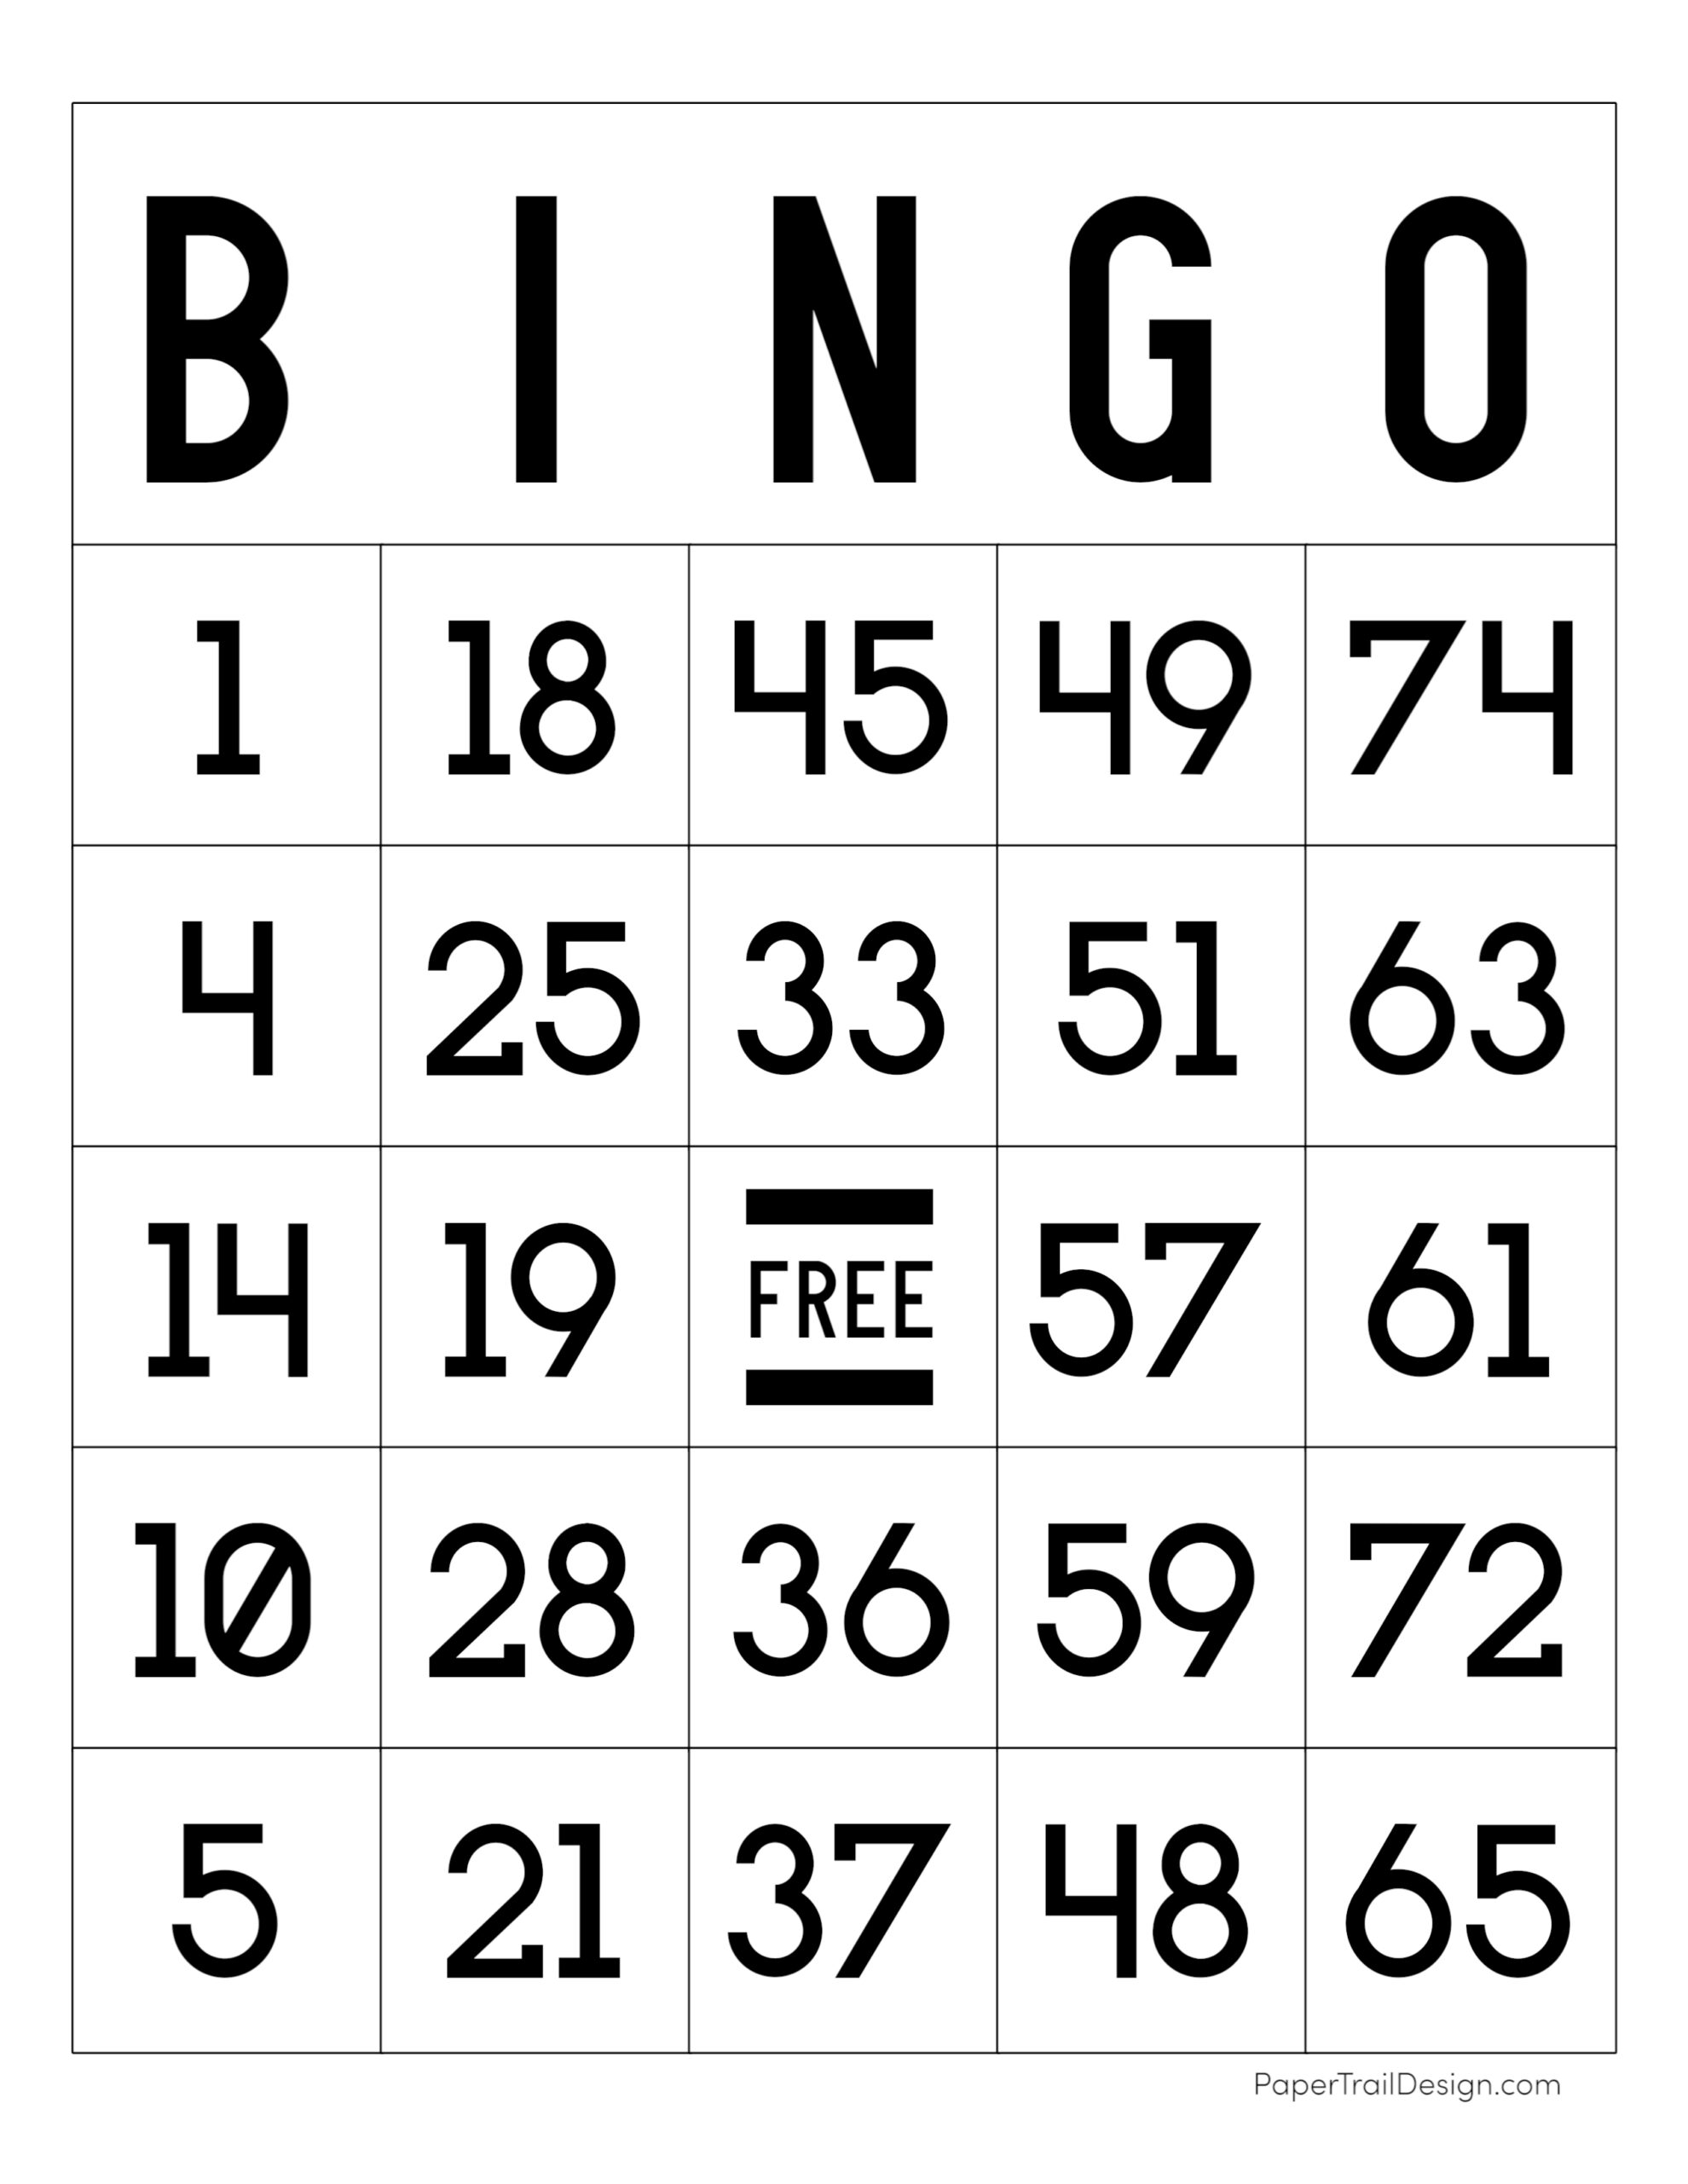 21 Bingo Cards Ideas In 2021 Bingo Cards Bingo Cards Printable Bingo